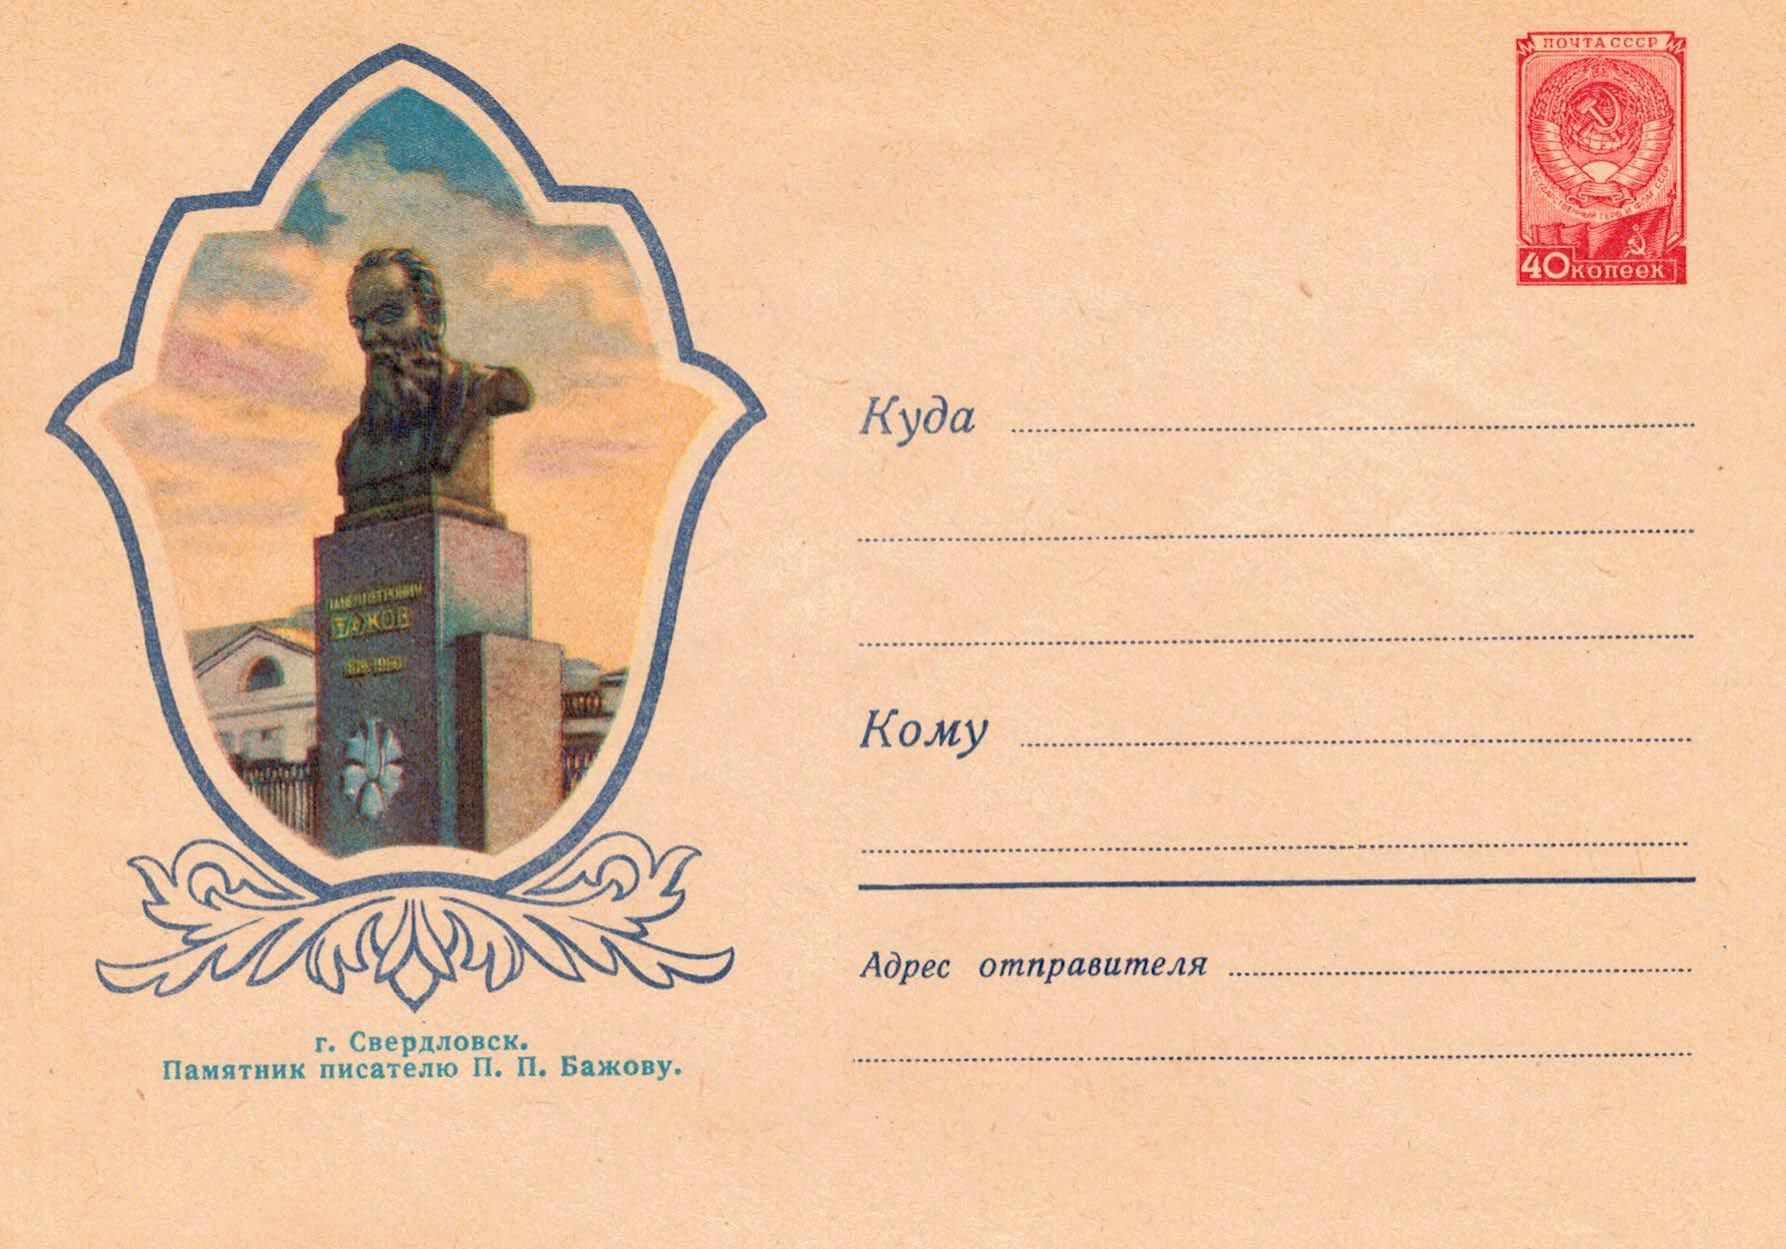 Bazhov's monument in Sverdlovsk